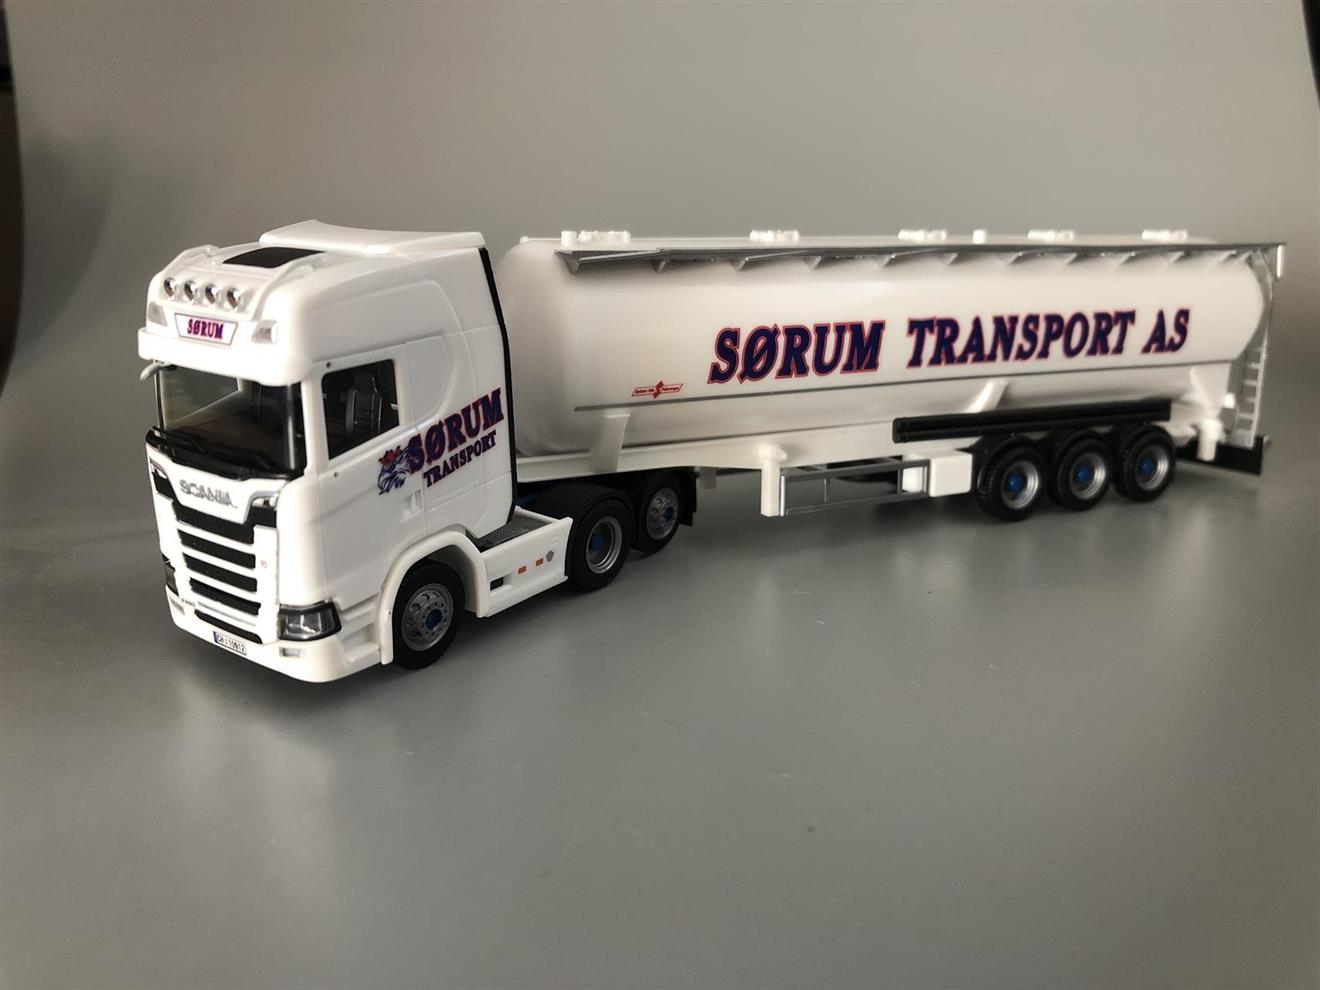 Sørum Transport - Scania CS silosemihenger